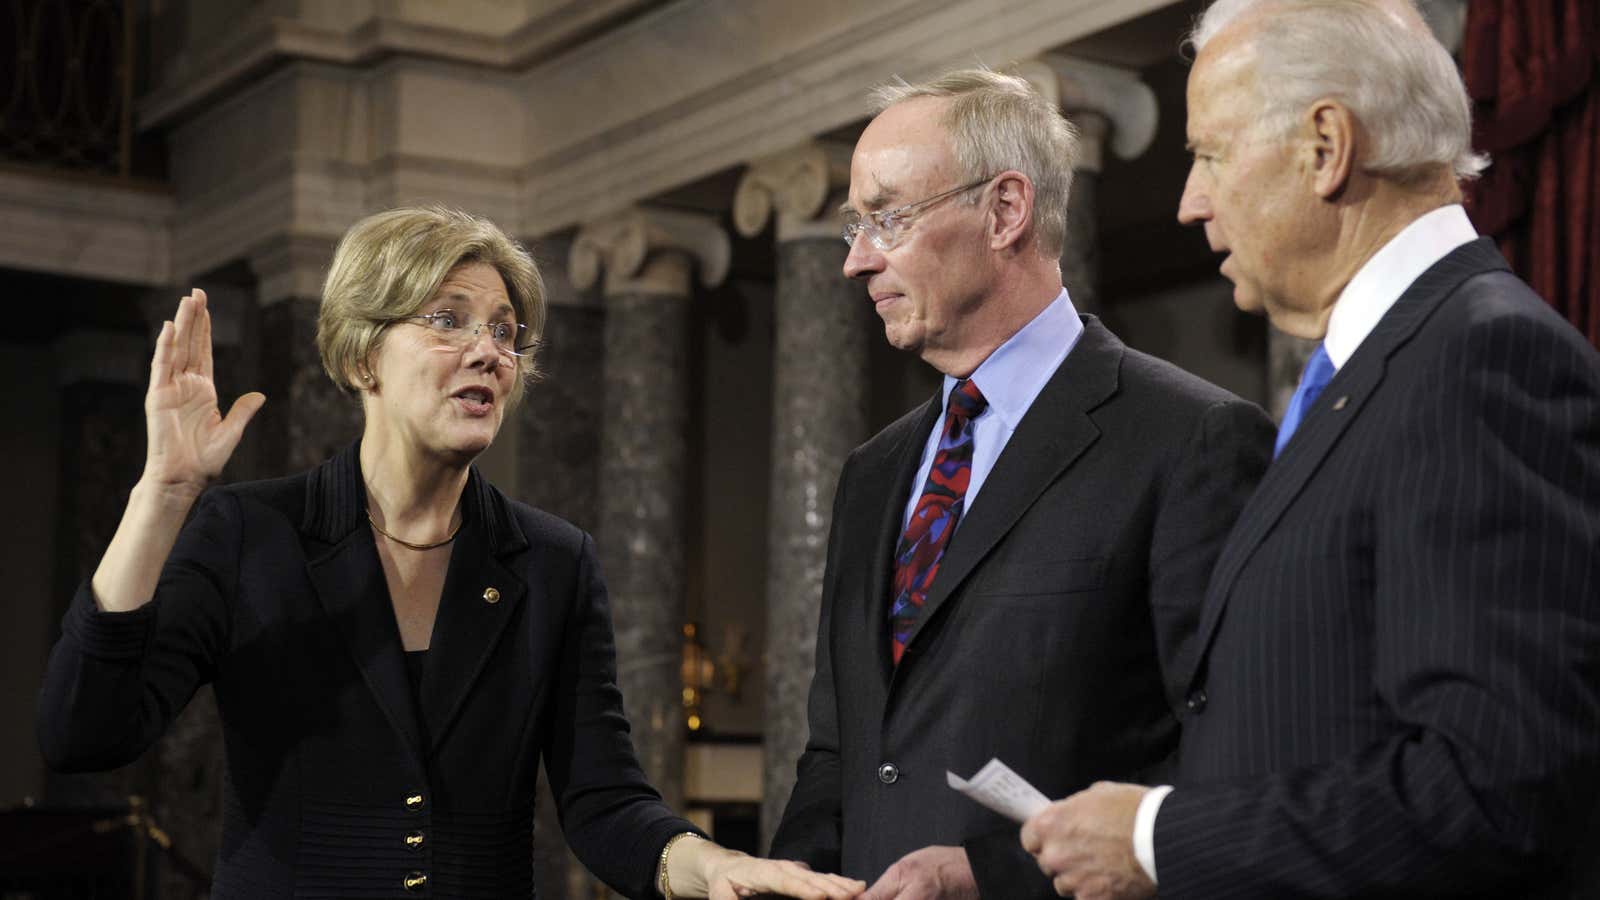 Warren is sworn in as a senator by vice president Biden in 2013.